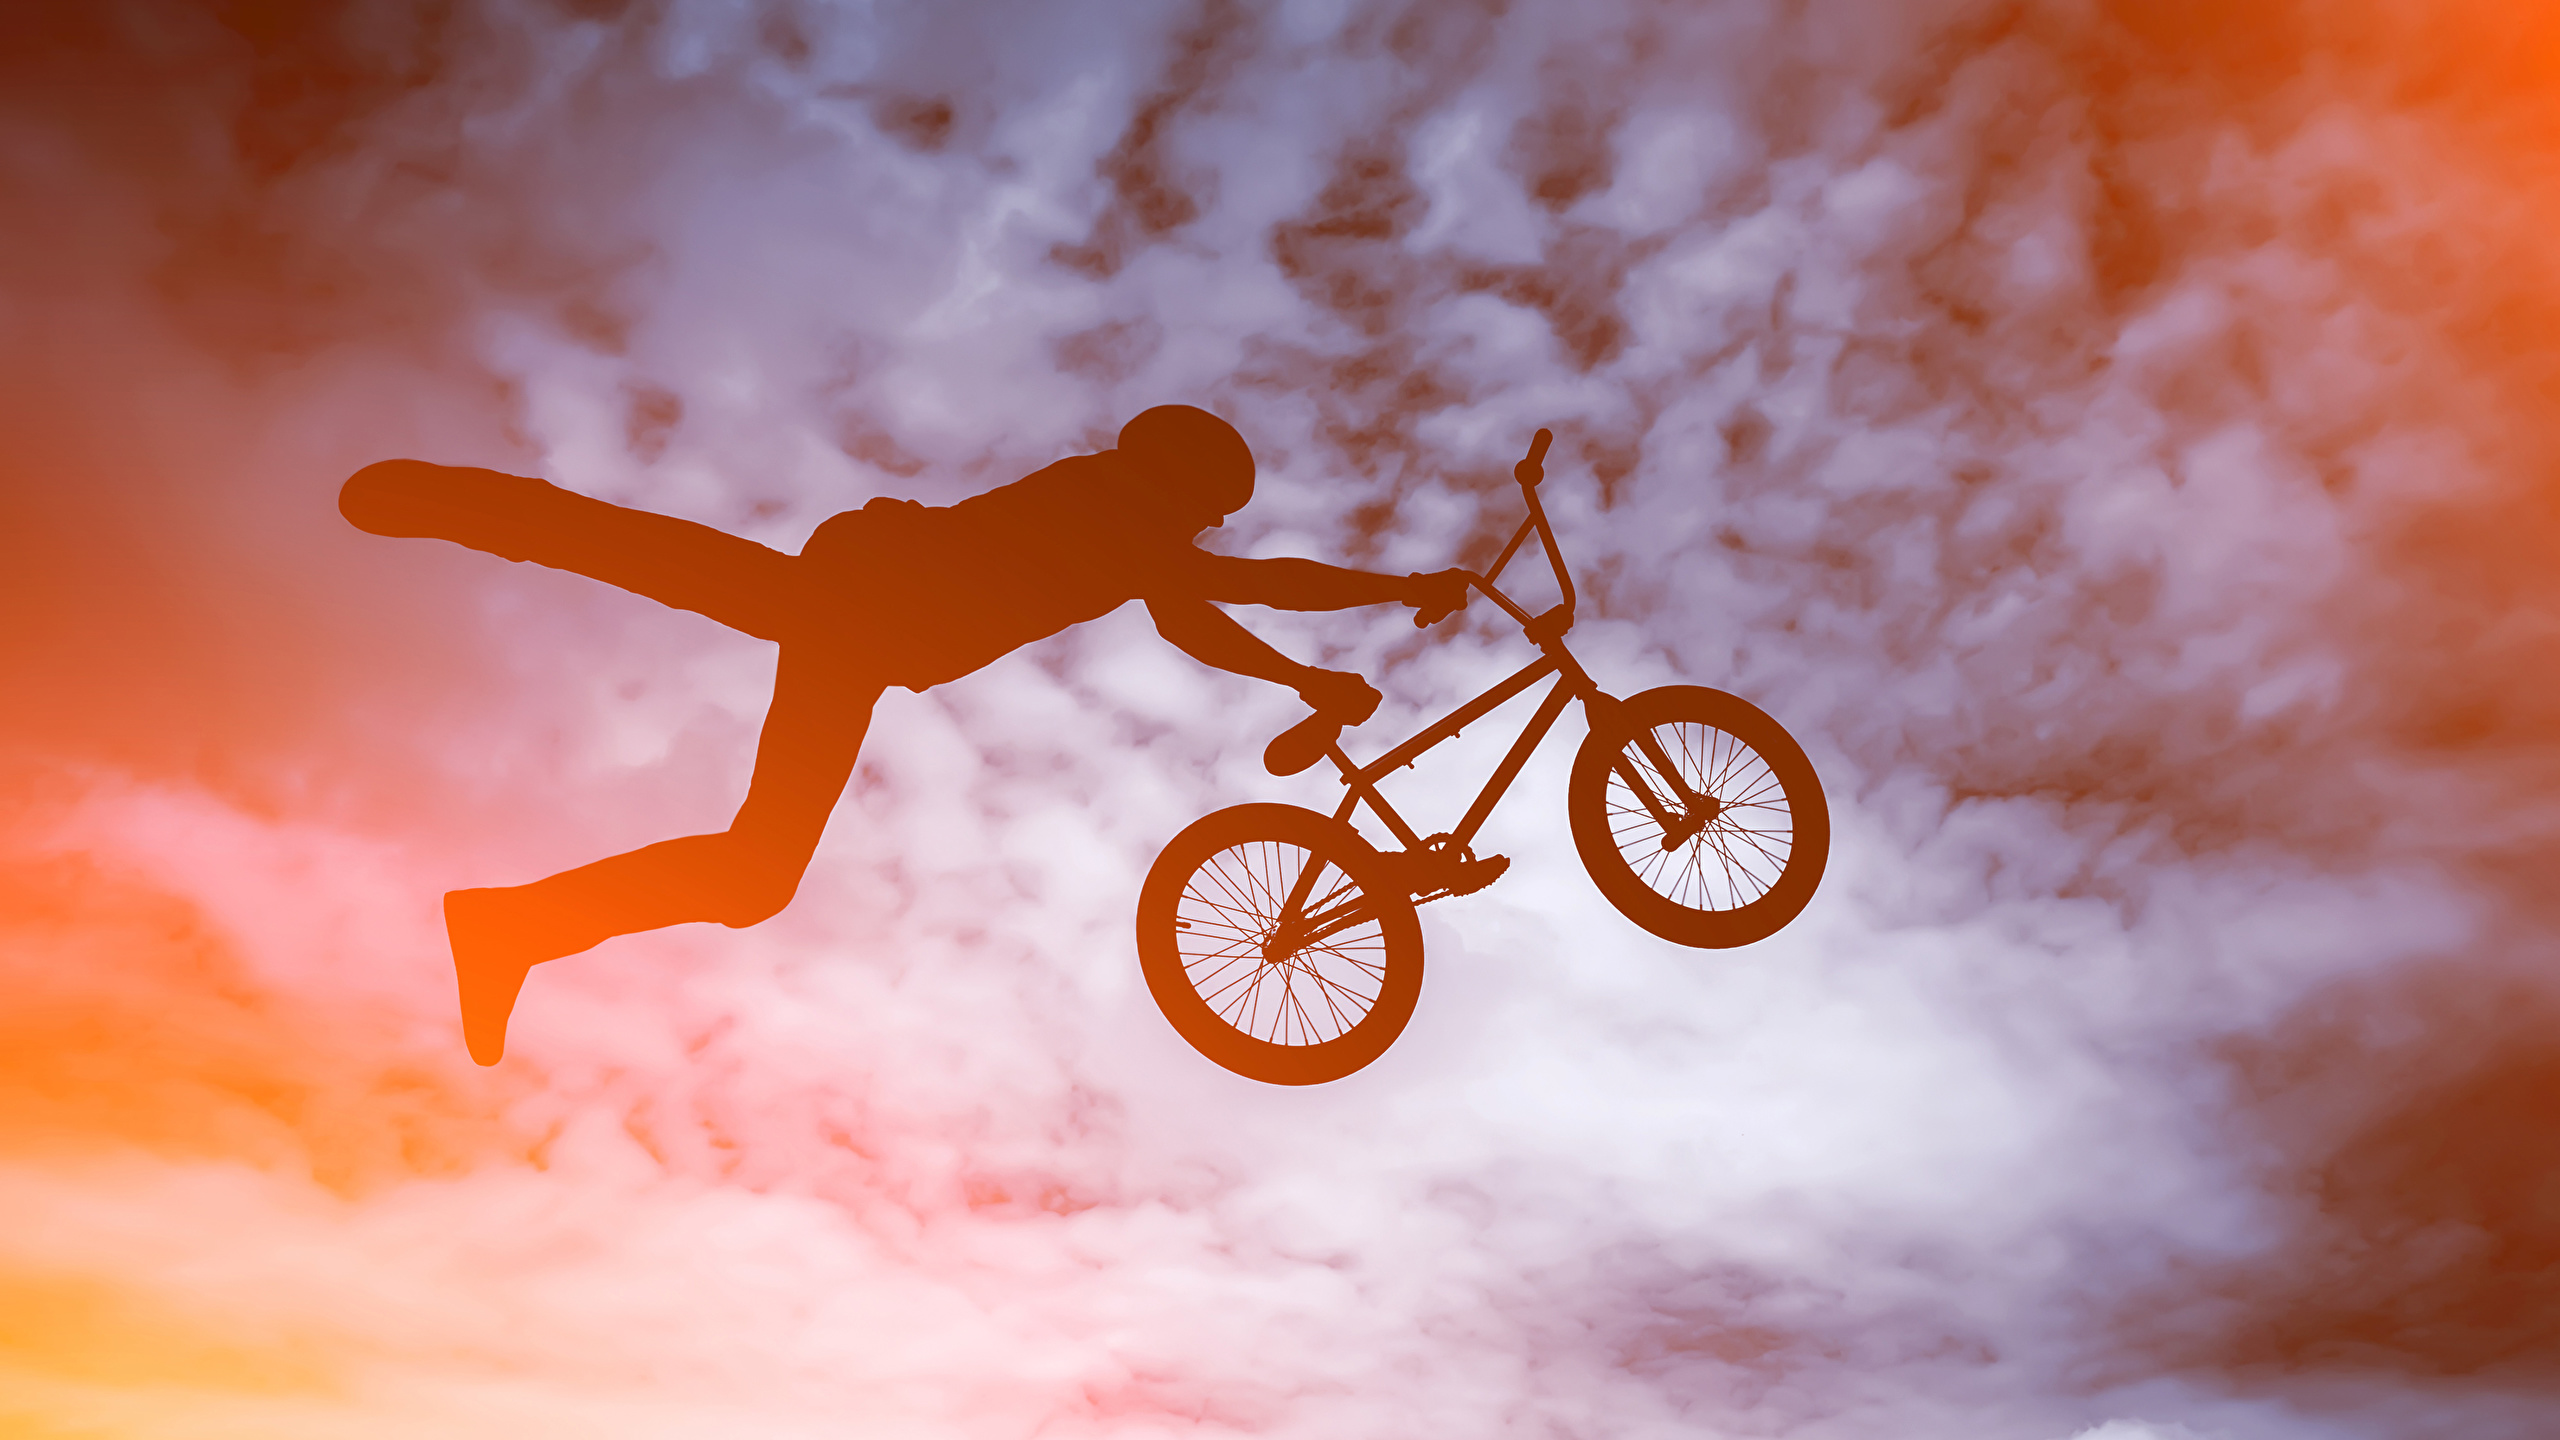 壁紙 2560x1440 男性 自転車 飛び シルエット スポーツ ダウンロード 写真